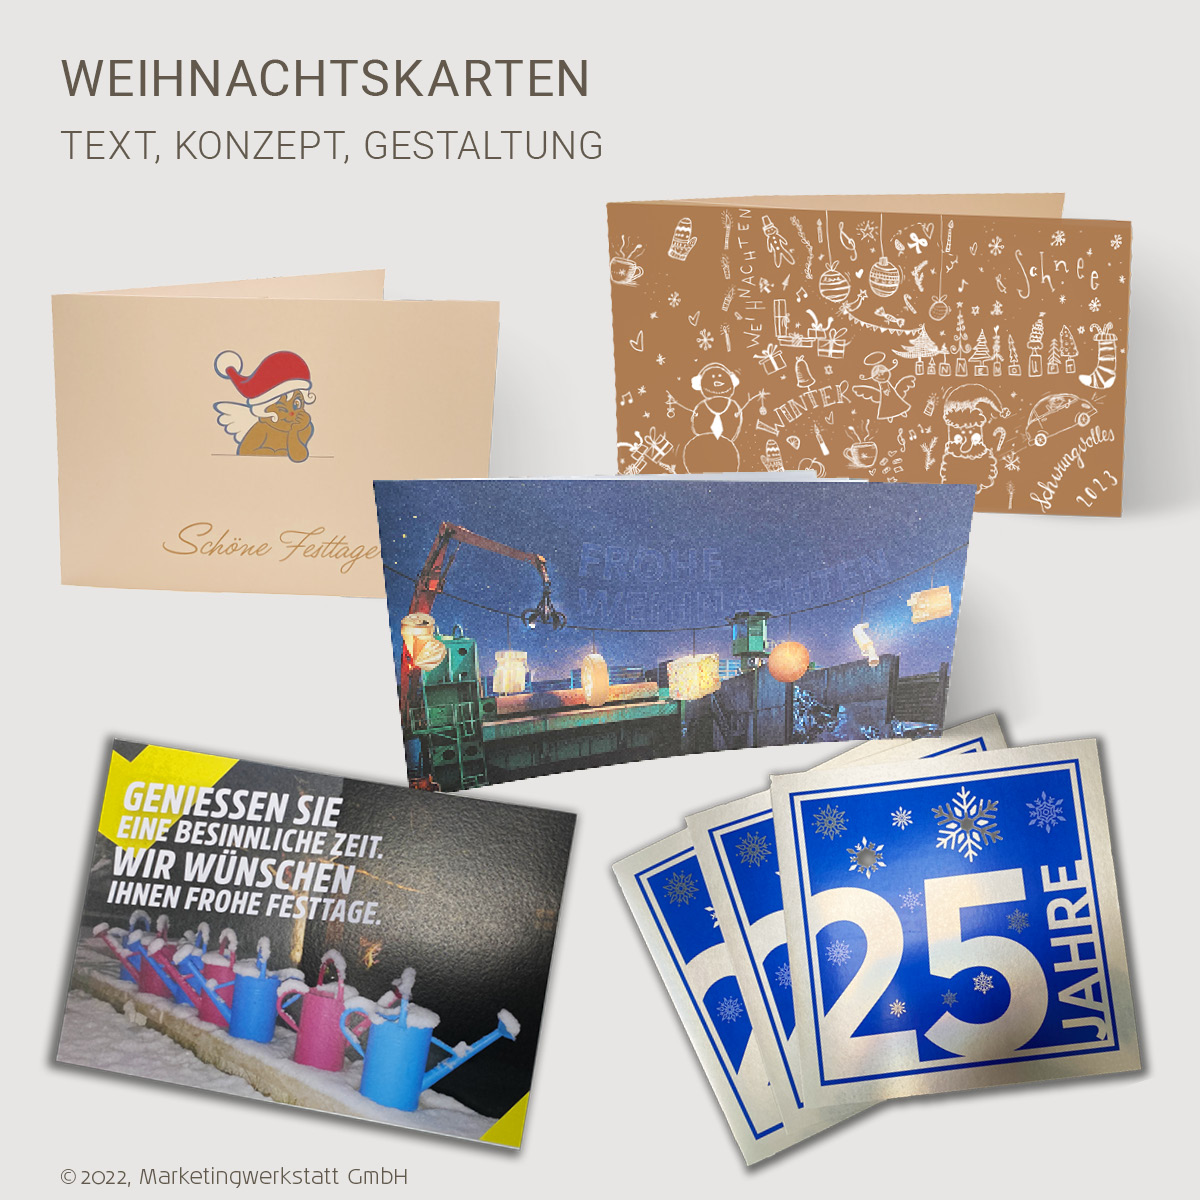 Marketingwerkstatt_Weihnachtskrten02-2023_1200x1200px_RGB